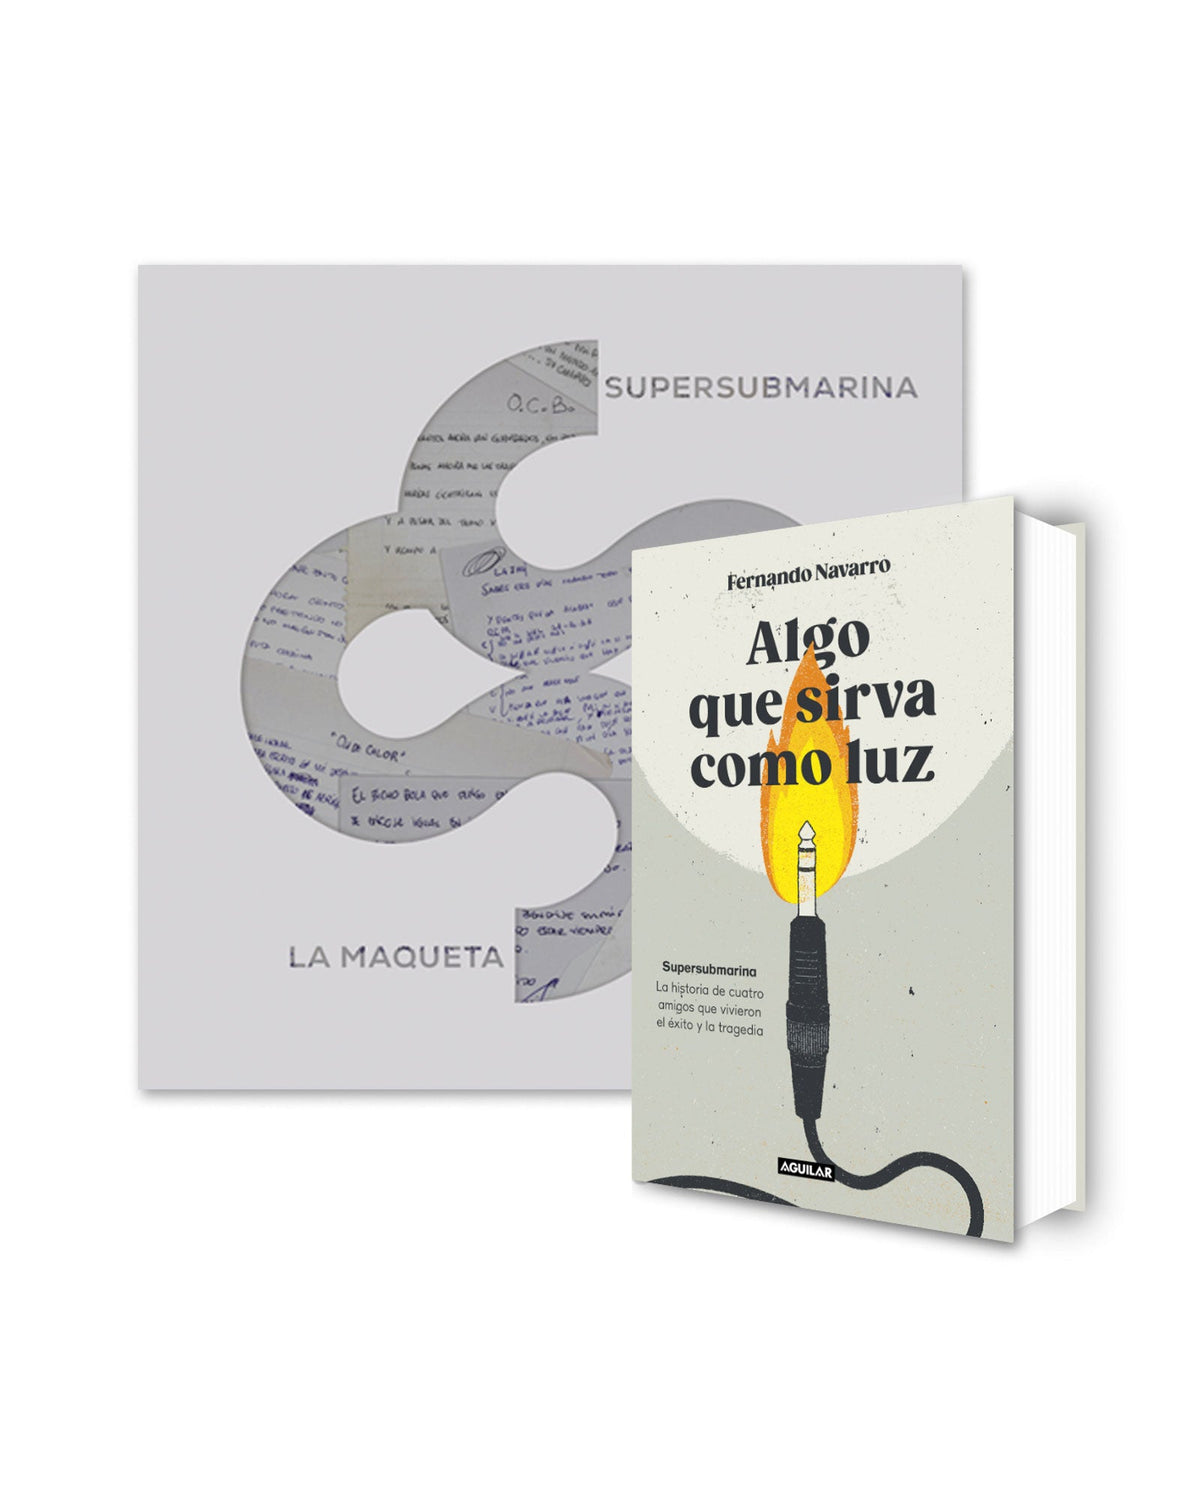 Supersubmarina - LP Vinilo "La Maqueta" + Libro "Algo que sirva como luz" - D2fy · Rocktud - D2fy · Rocktud